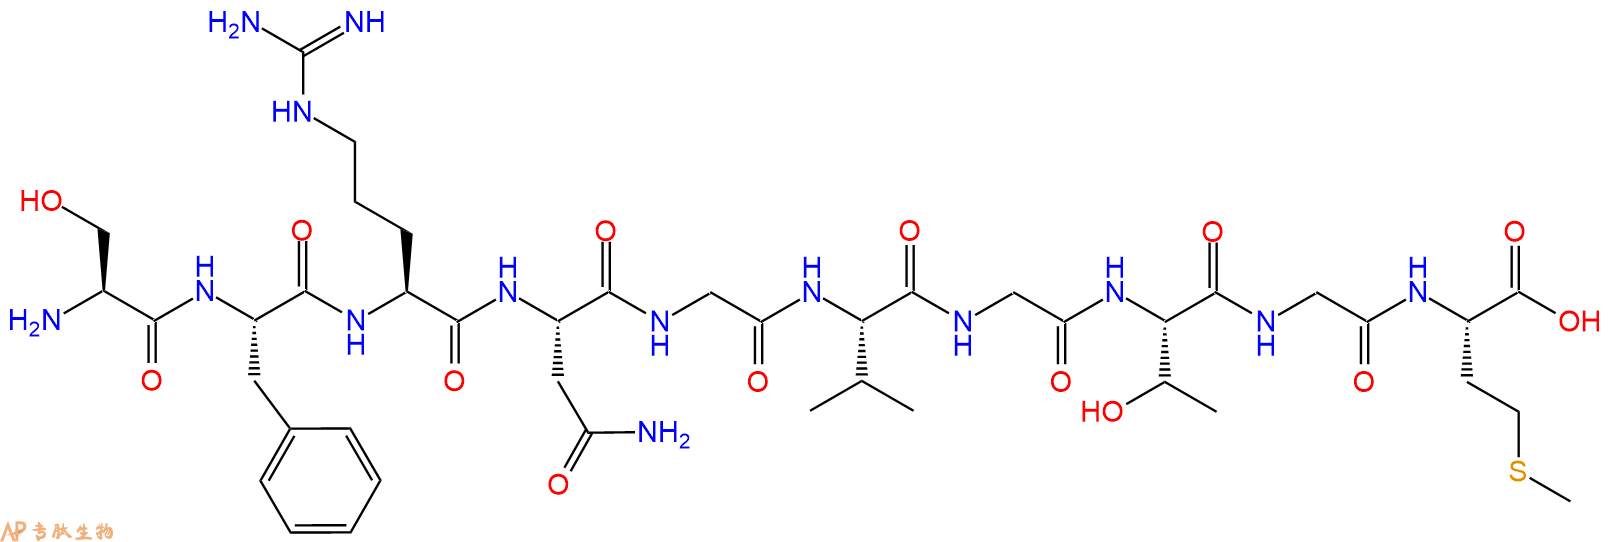 专肽生物产品Neuropeptide S (1-10) (human) trifluoroacetate salt 904910-39-0